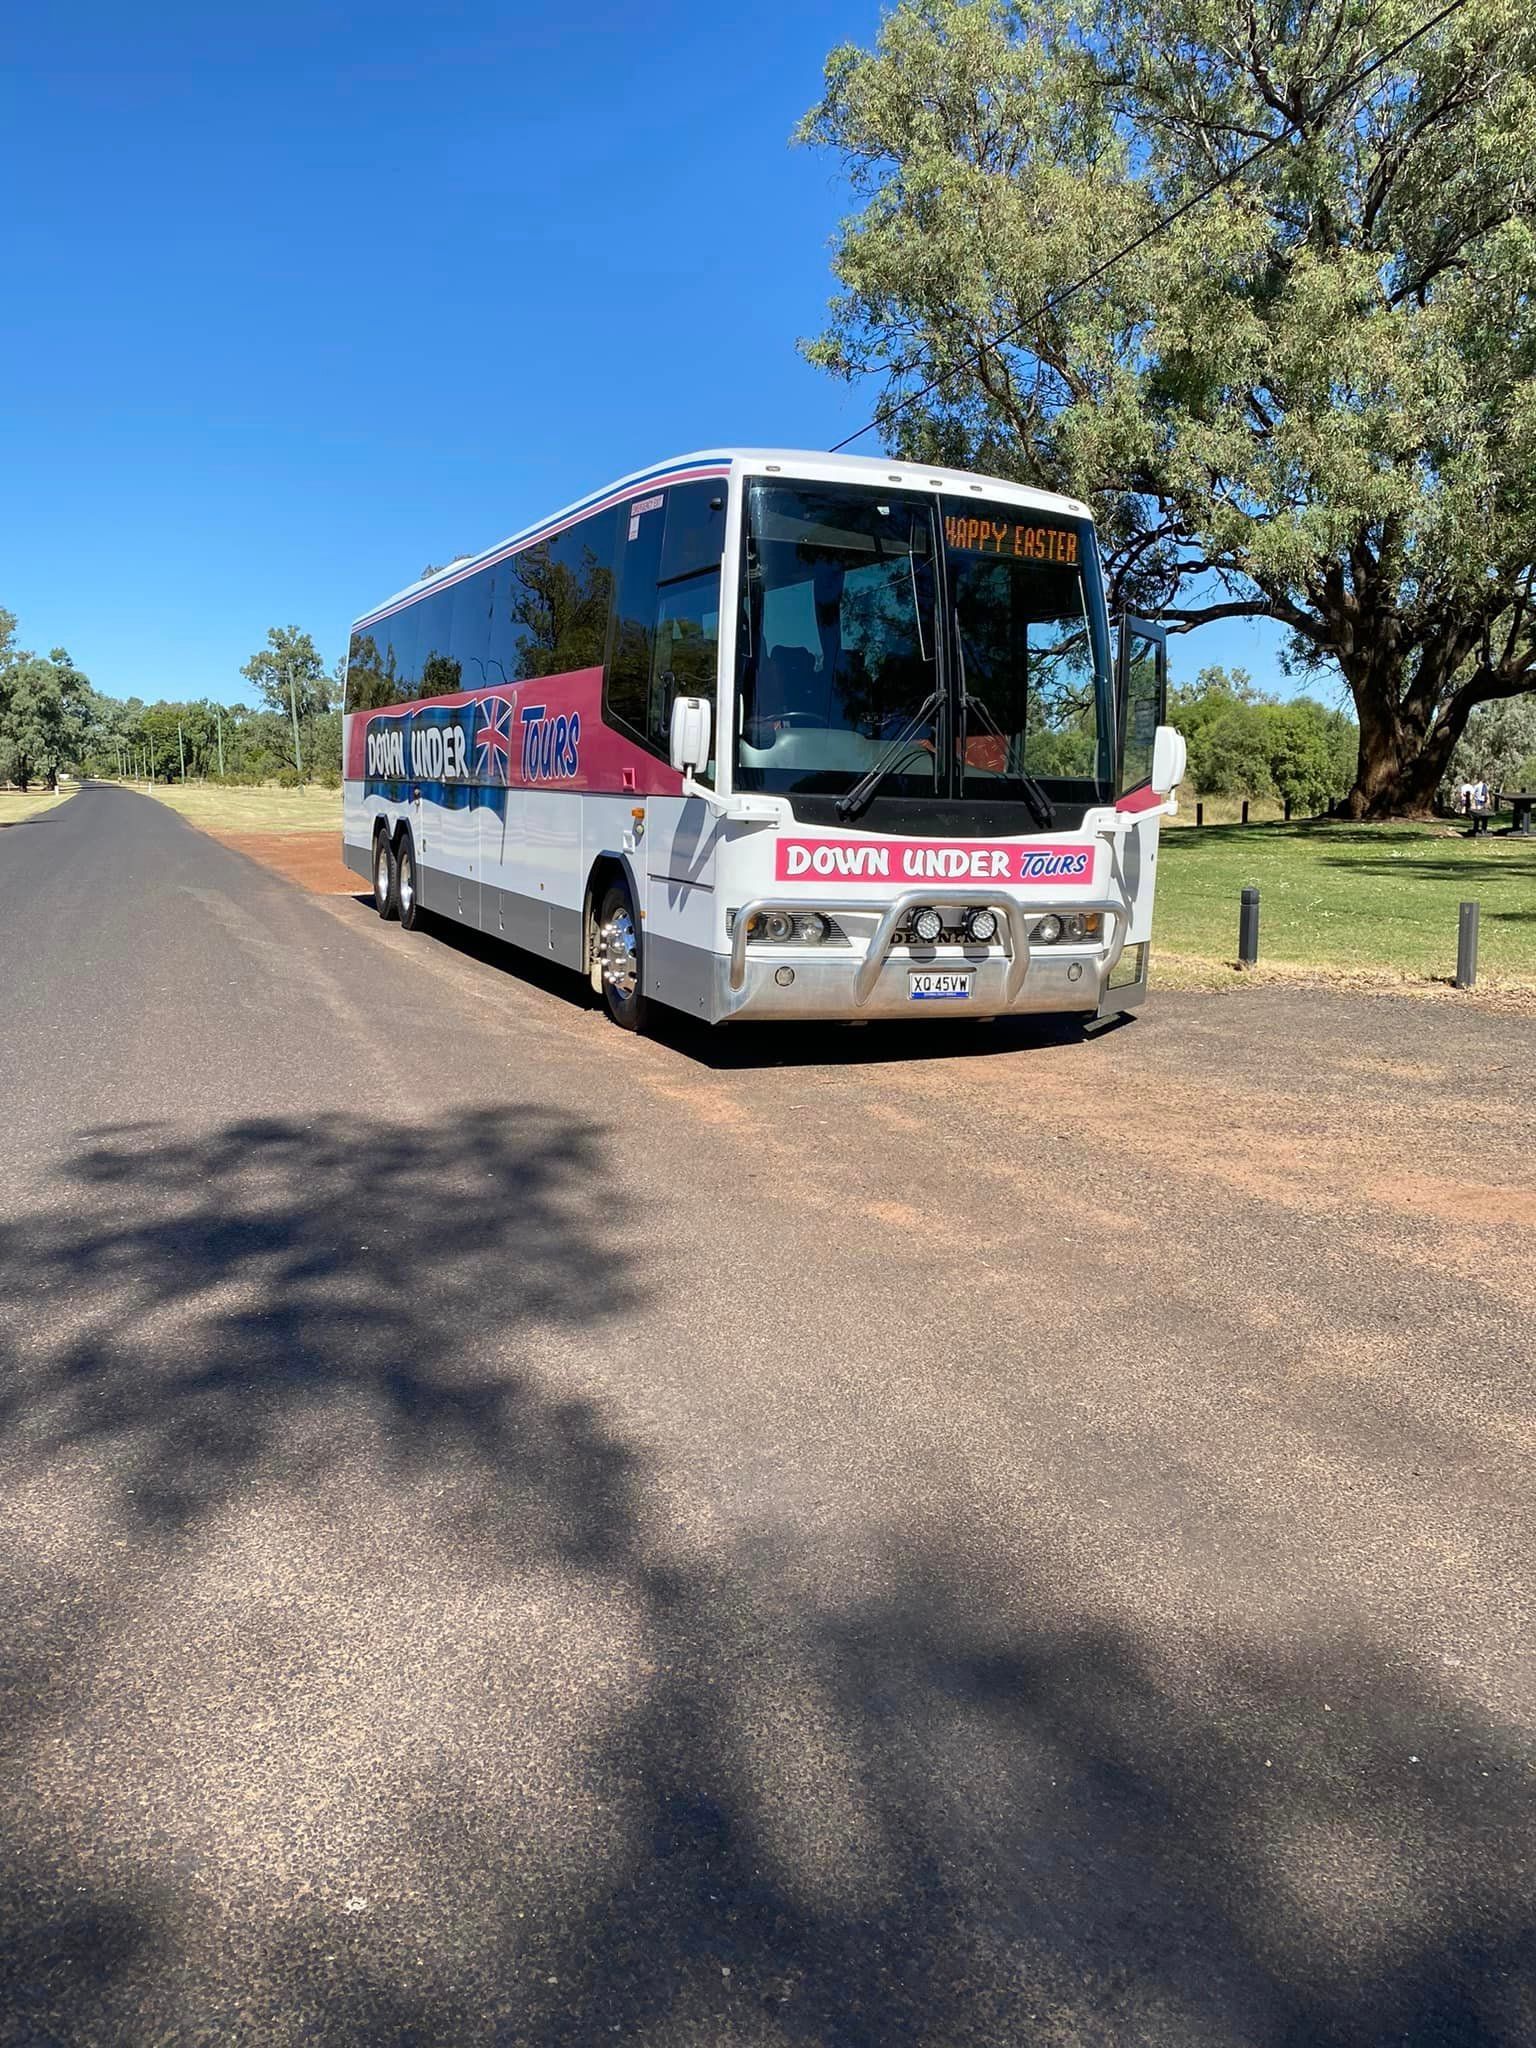 down under bus tours